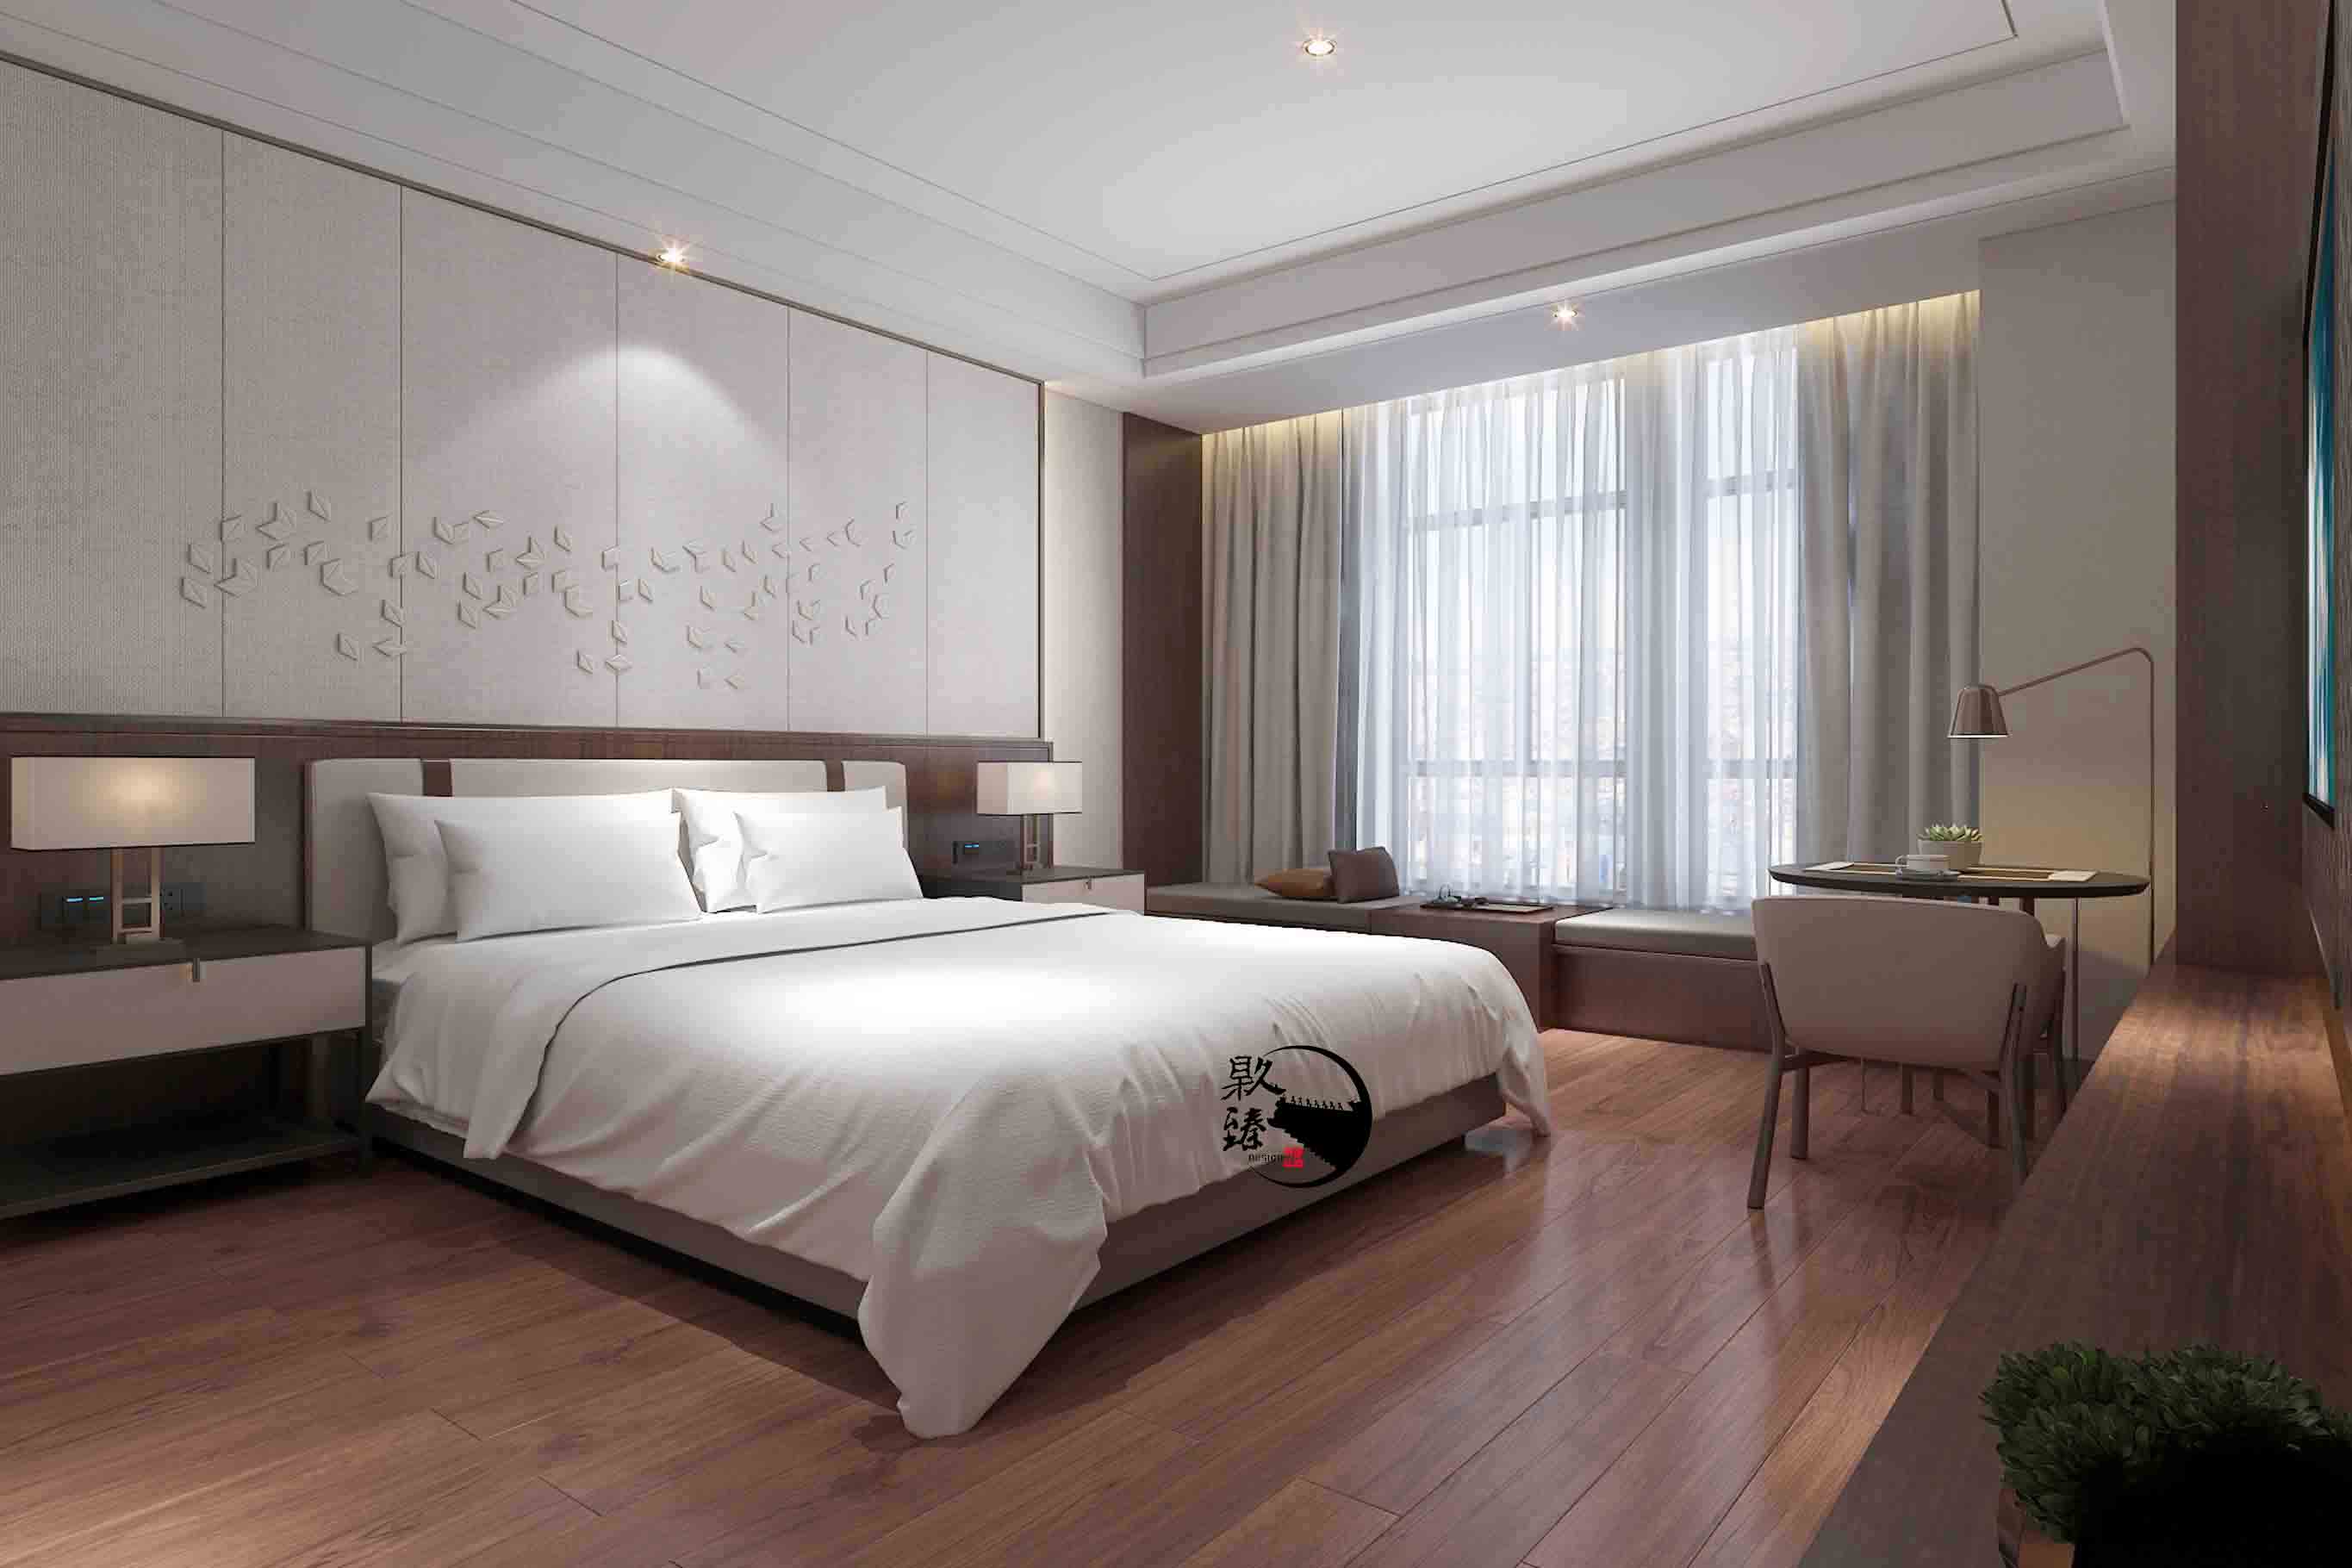 银川米素酒店设计|满足客户对舒适和安静的需求